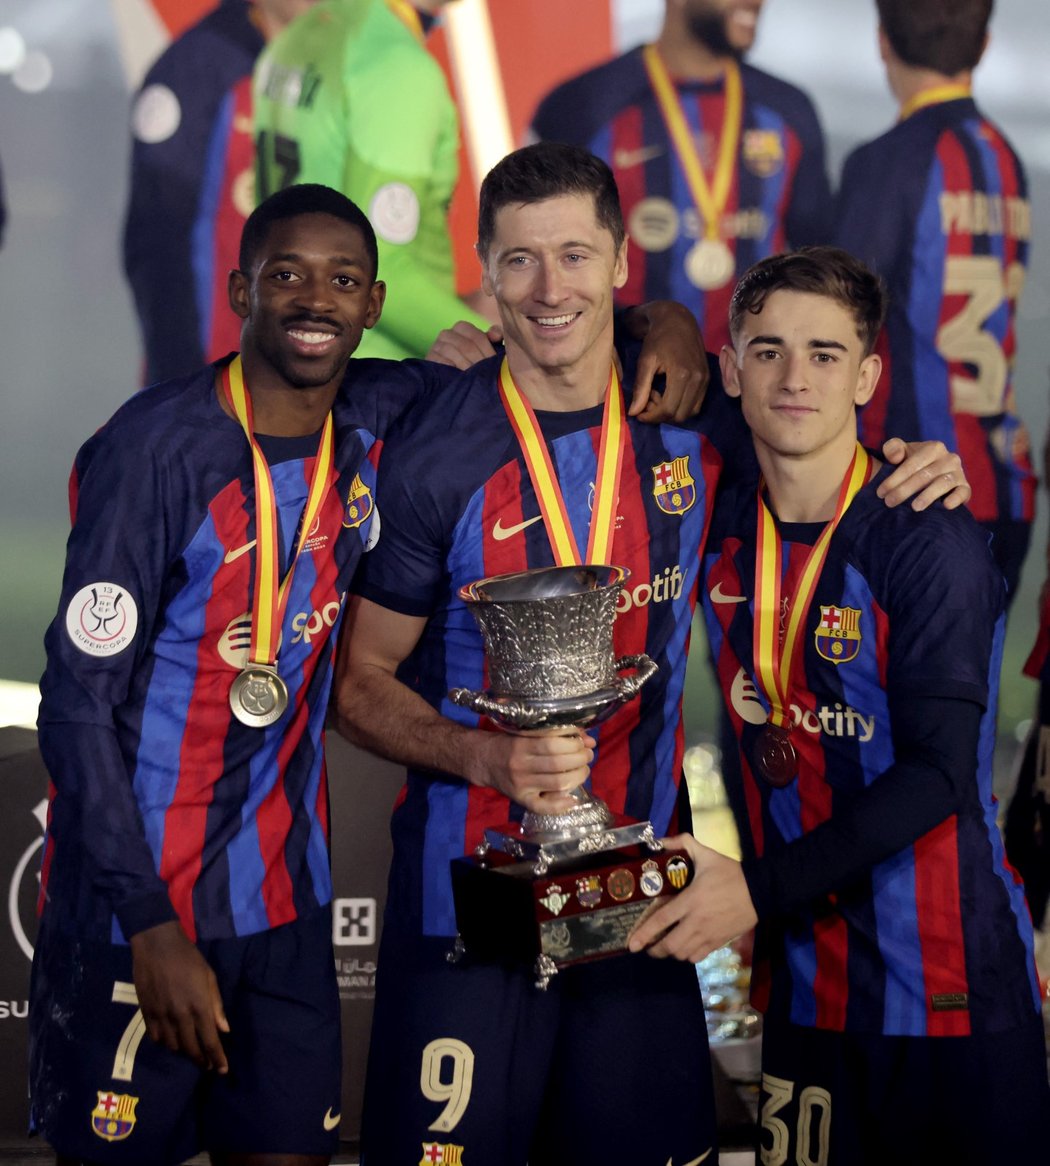 Hráči Barcelony se radují z vítězství v superpoháru